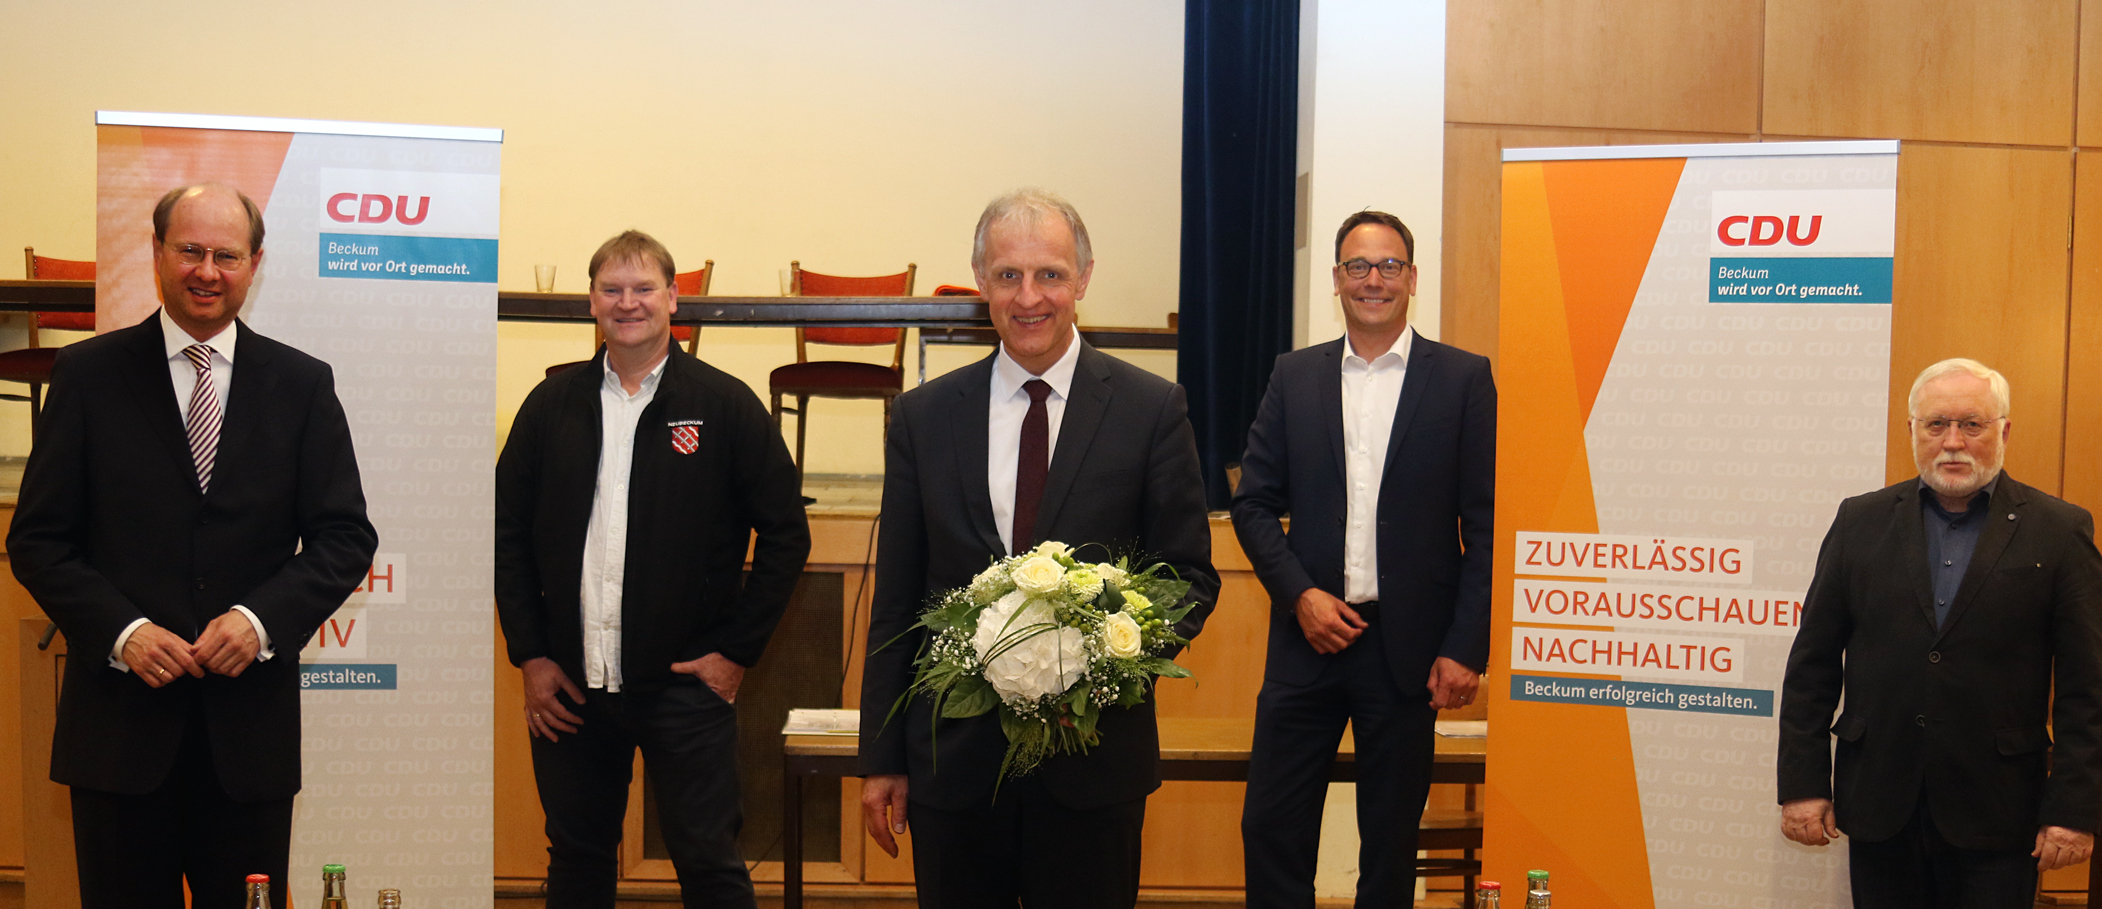 CDU Vorstandsmitglieder (v.l.) Dr. Gericke, Burkhard Dierkes (OU Neubeckum), Dr. Strothmann, Markus Höner (Vorsitzender Stadtverband) Rudolf Goriss (OU Beckum)